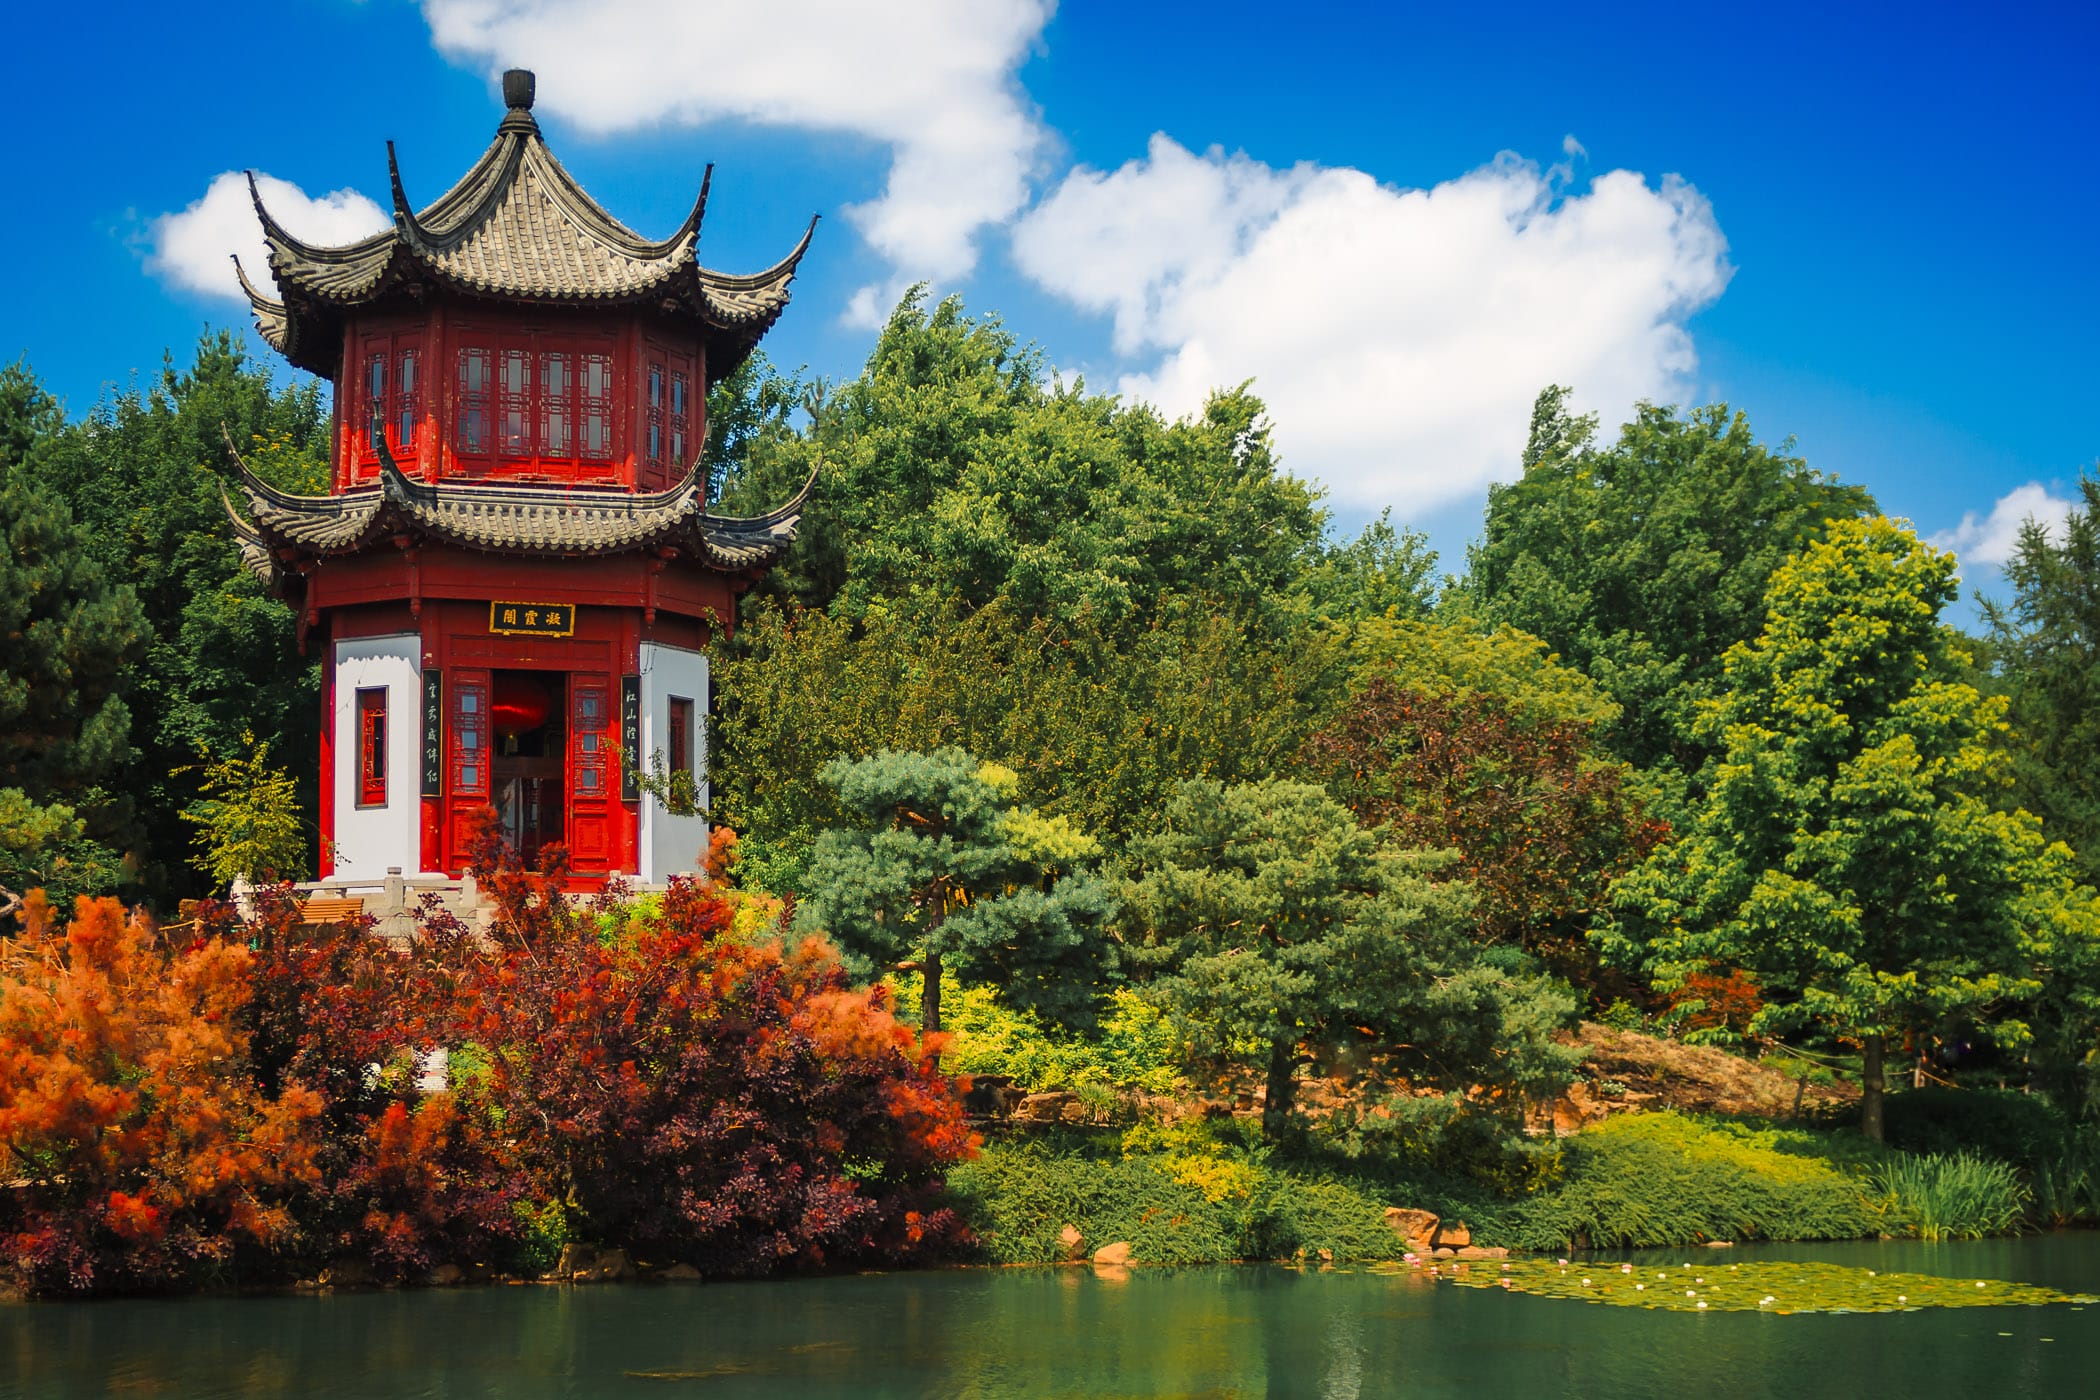 A pagoda at the Chinese Garden, Jardin botanique de Montréal.